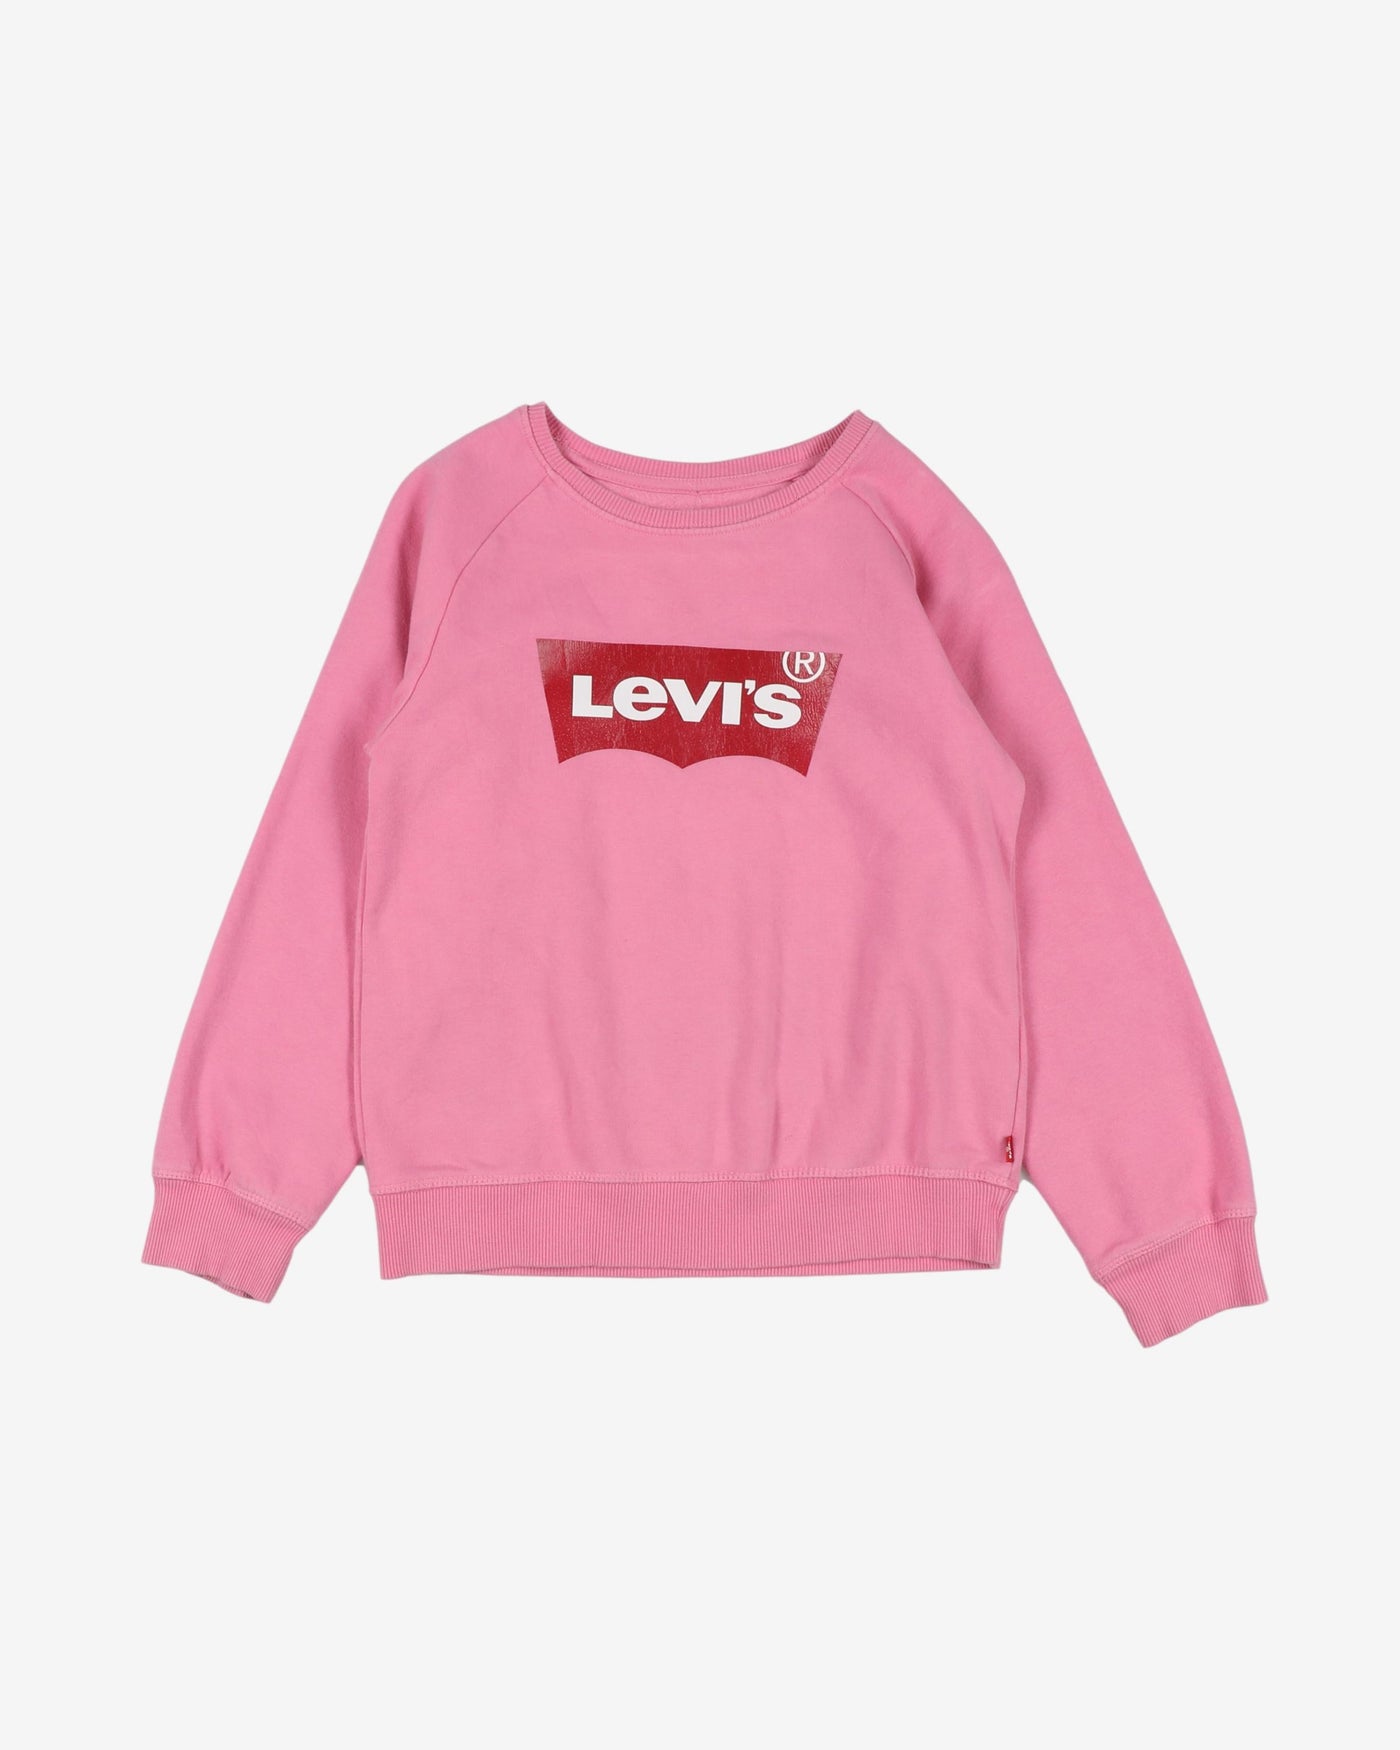 Levis pink red batwing logo printed sweatshirt - xs